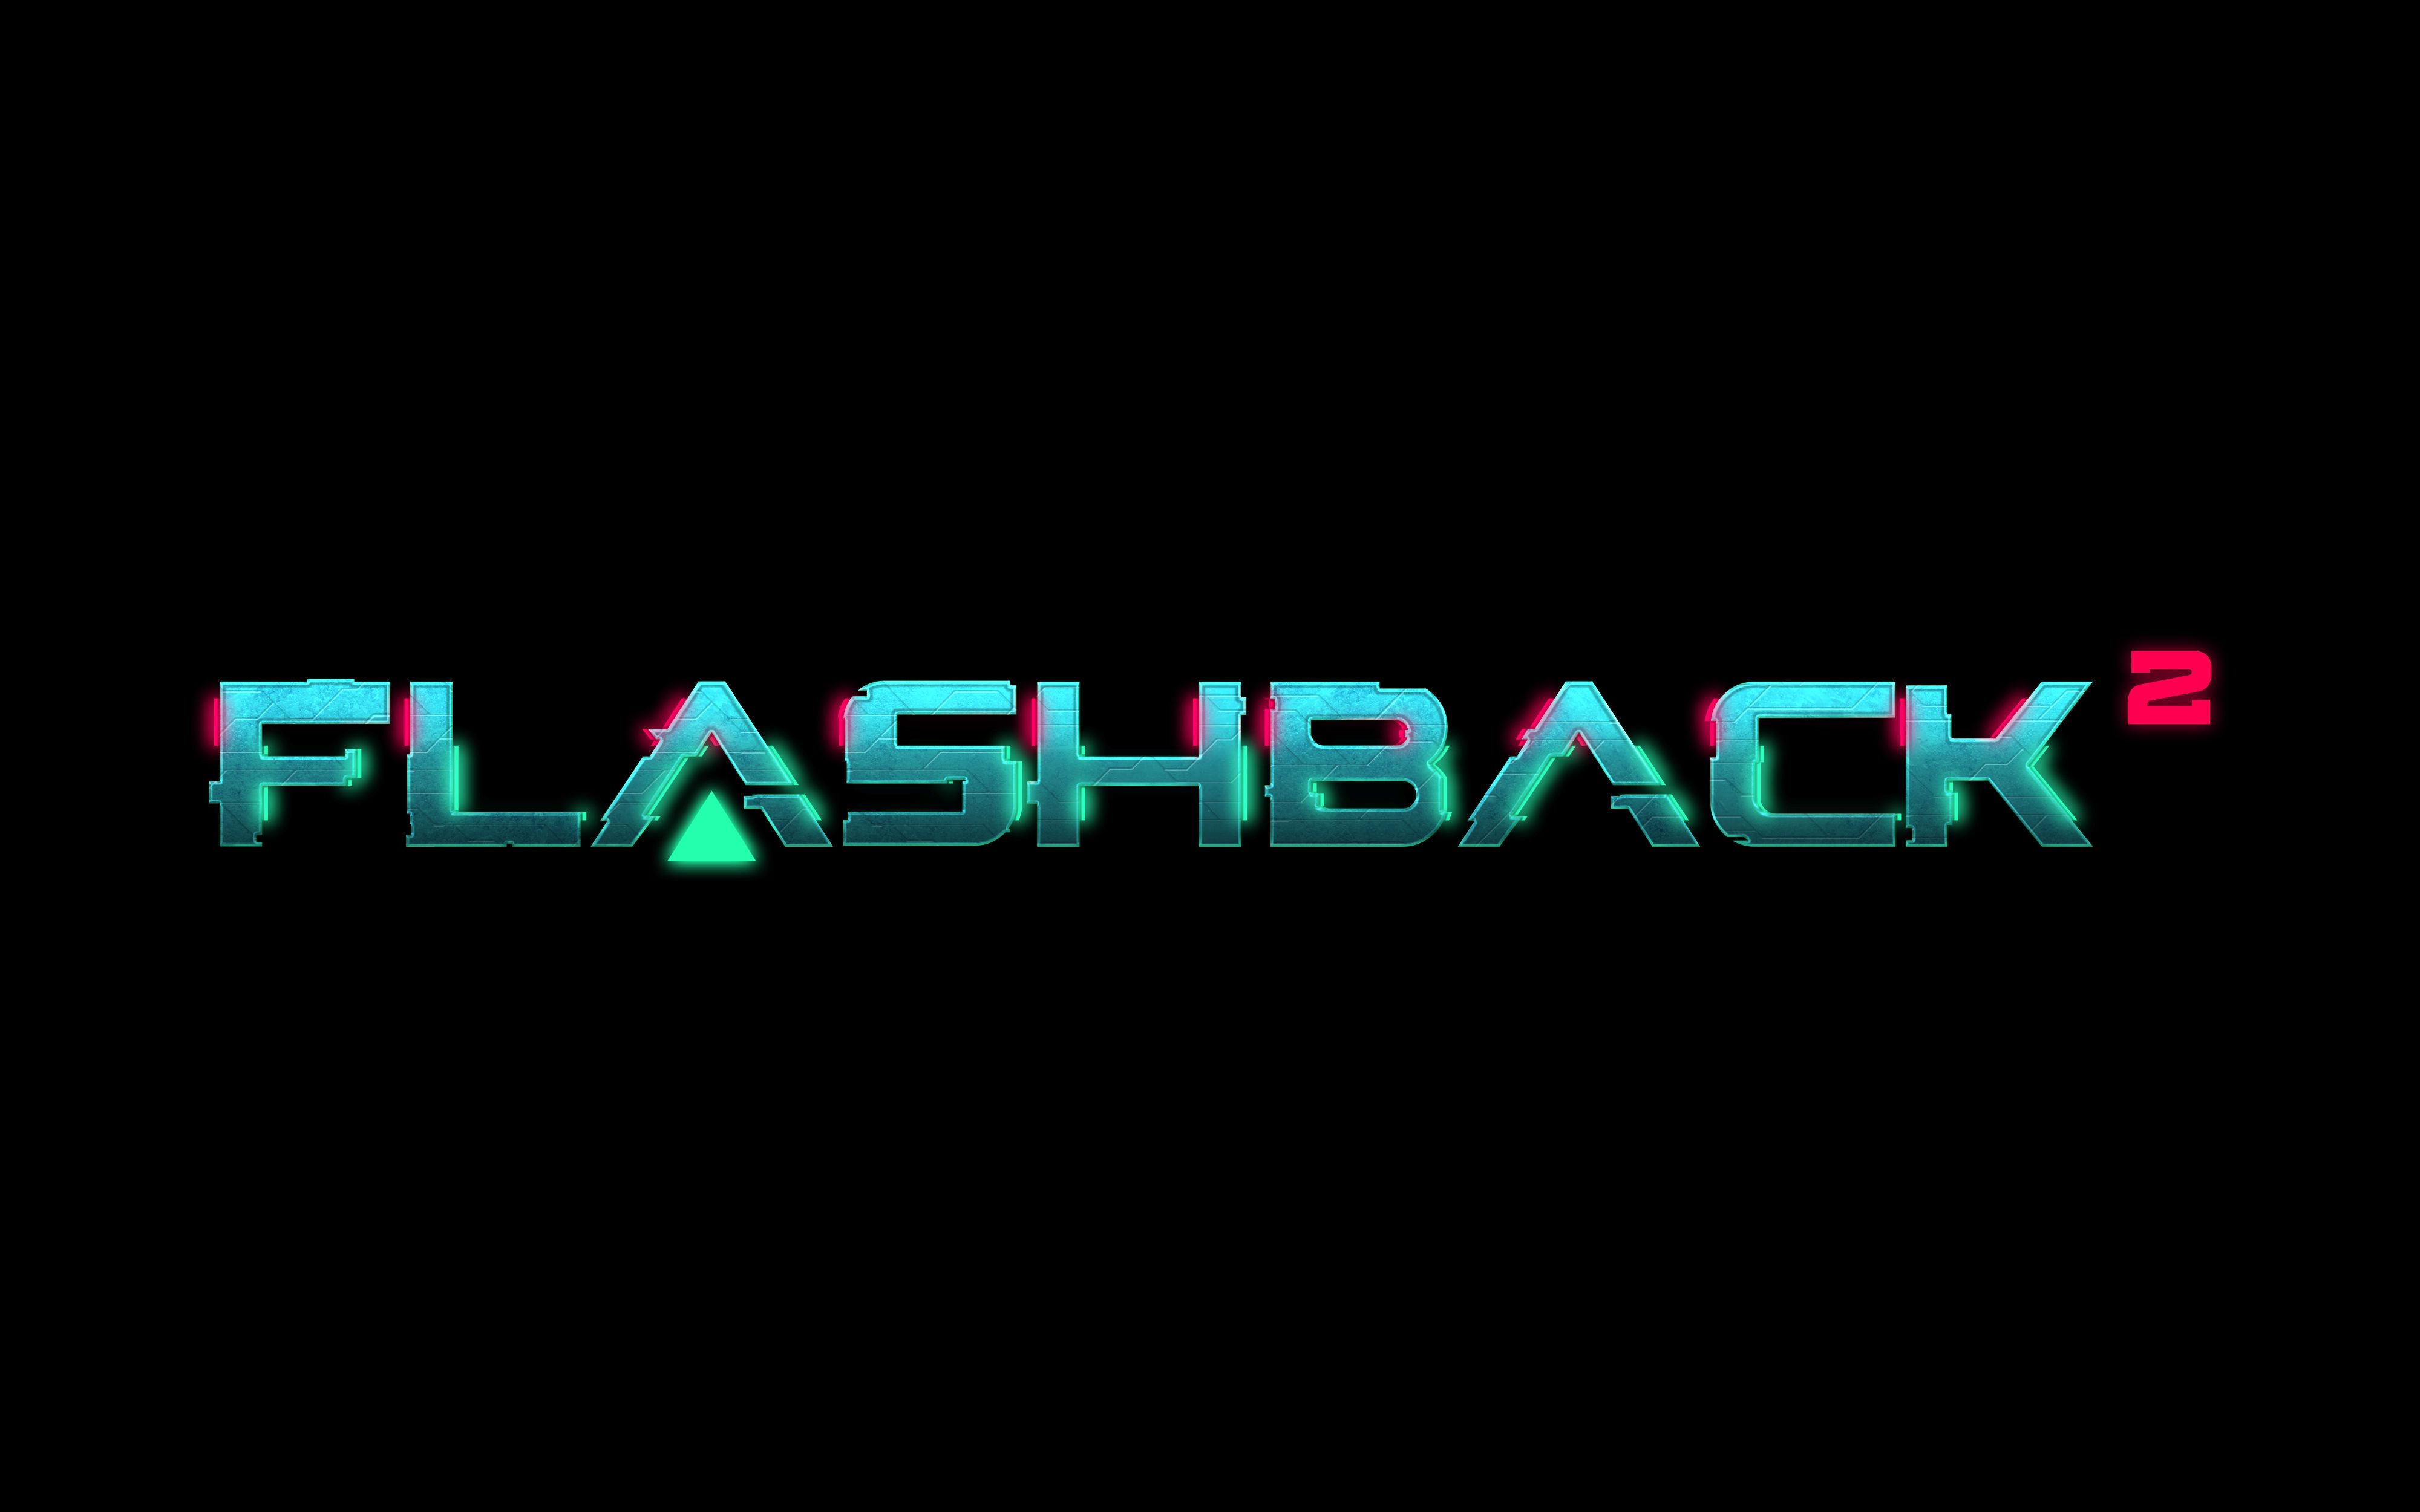 經典回歸！橫版動作冒險遊戲《Flashback 2》將於2022年發售登上PC和主機平台